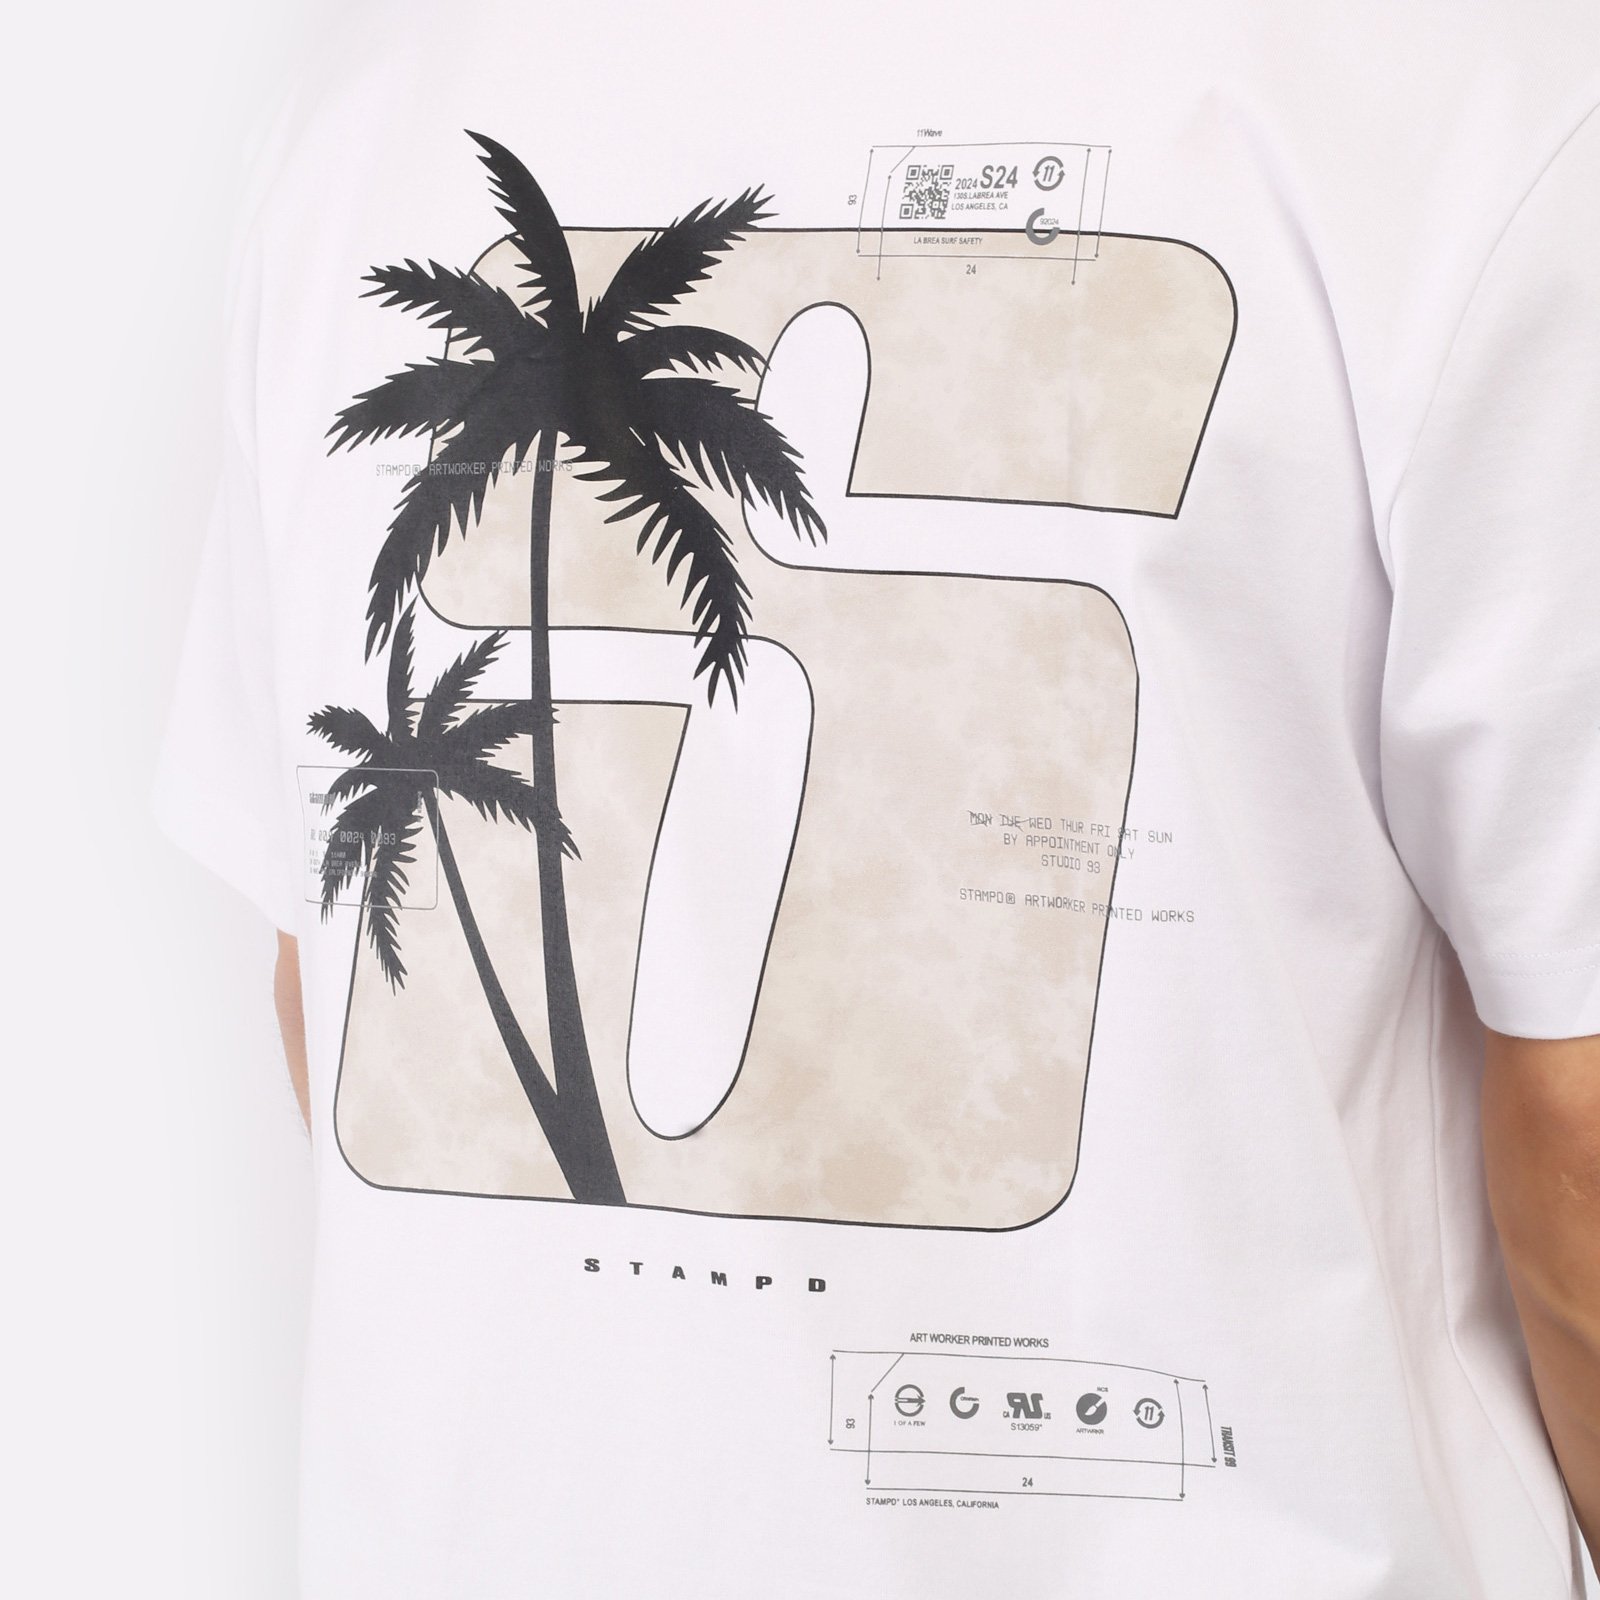 мужская футболка Stampd S24 Transit Relaxed Tee  (SLA-M3331TE-WHT)  - цена, описание, фото 4